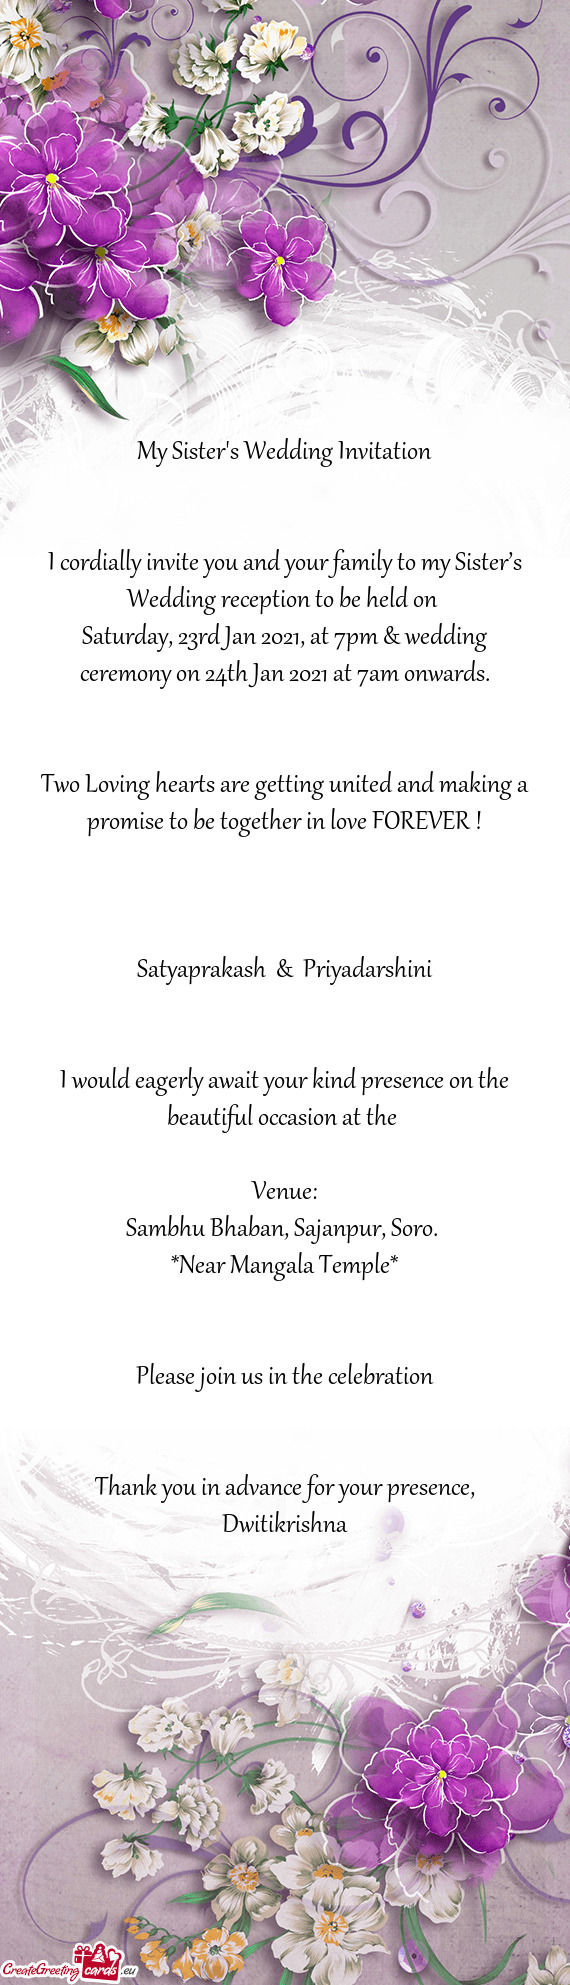 Satyaprakash & Priyadarshini